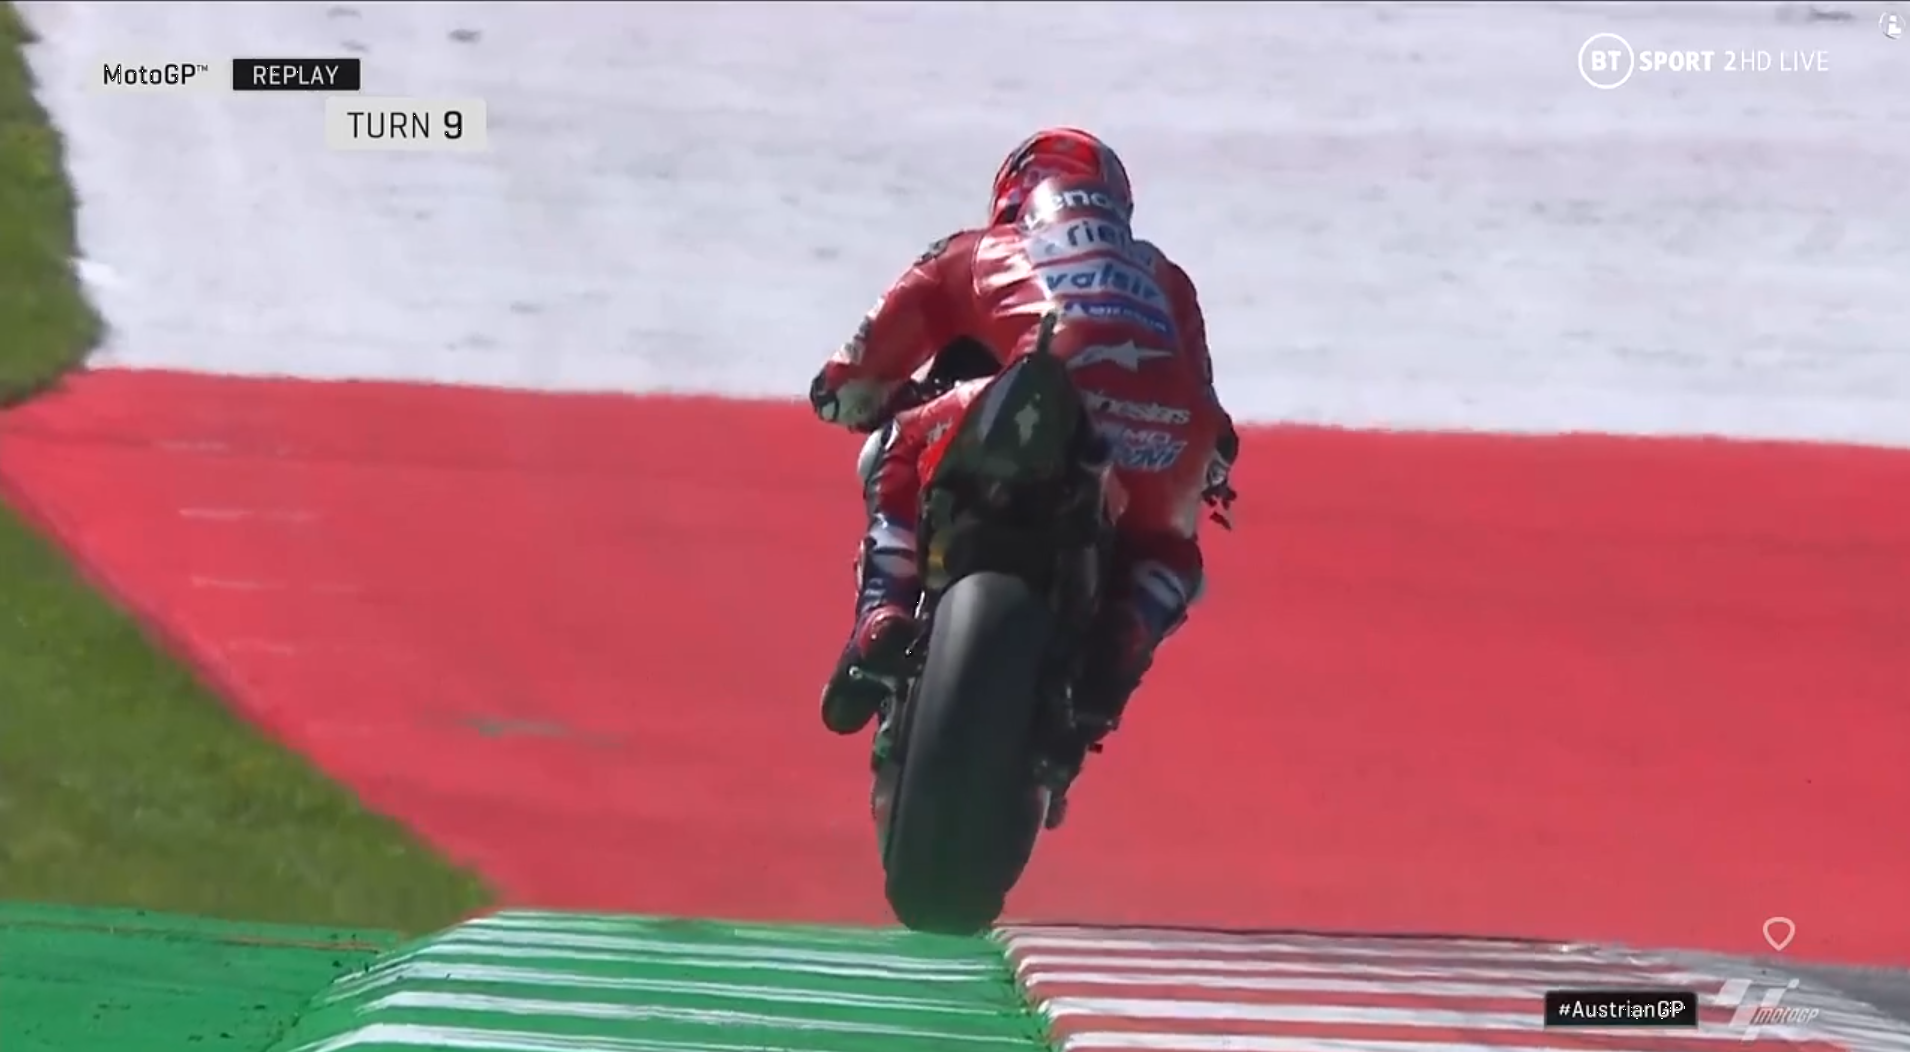 🏁🇦🇹 Austria GP FP1: The Ducati still Fast!